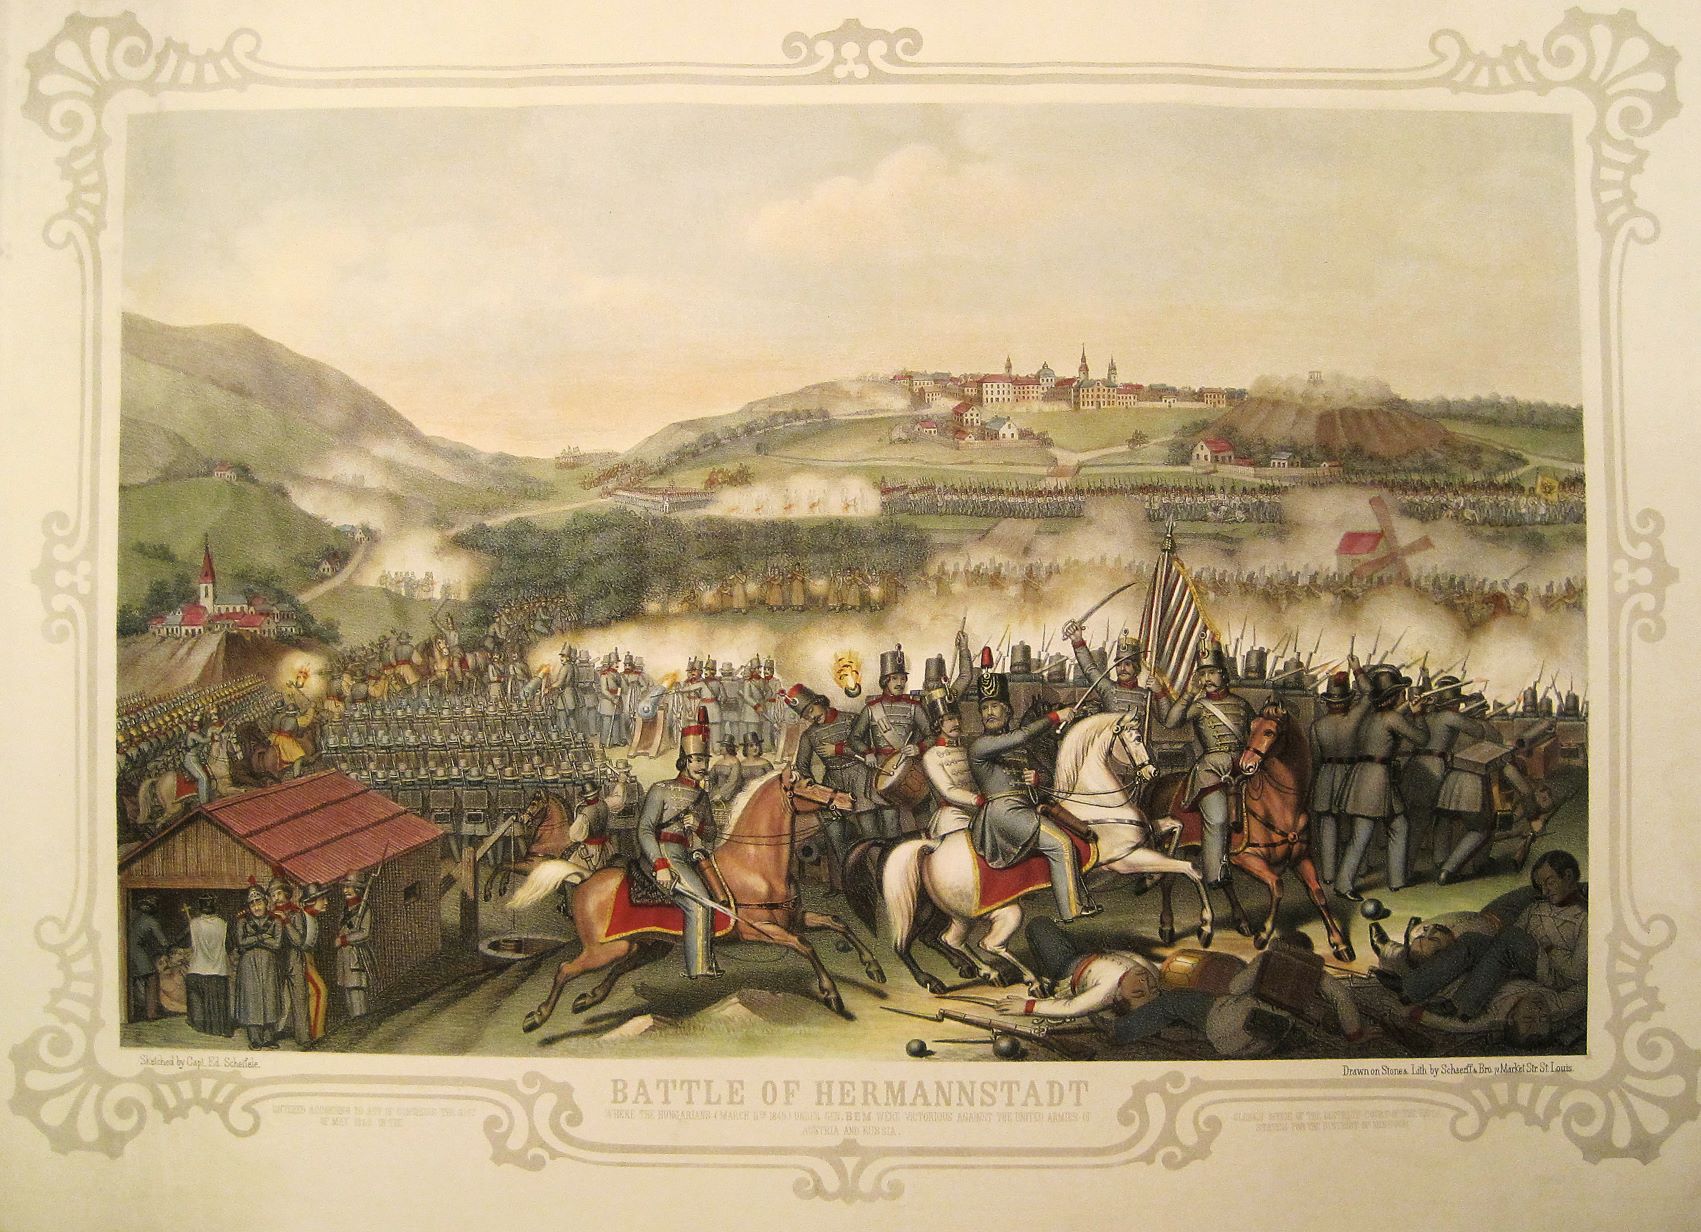 A magyarországi orosz intervenció 1849-ben